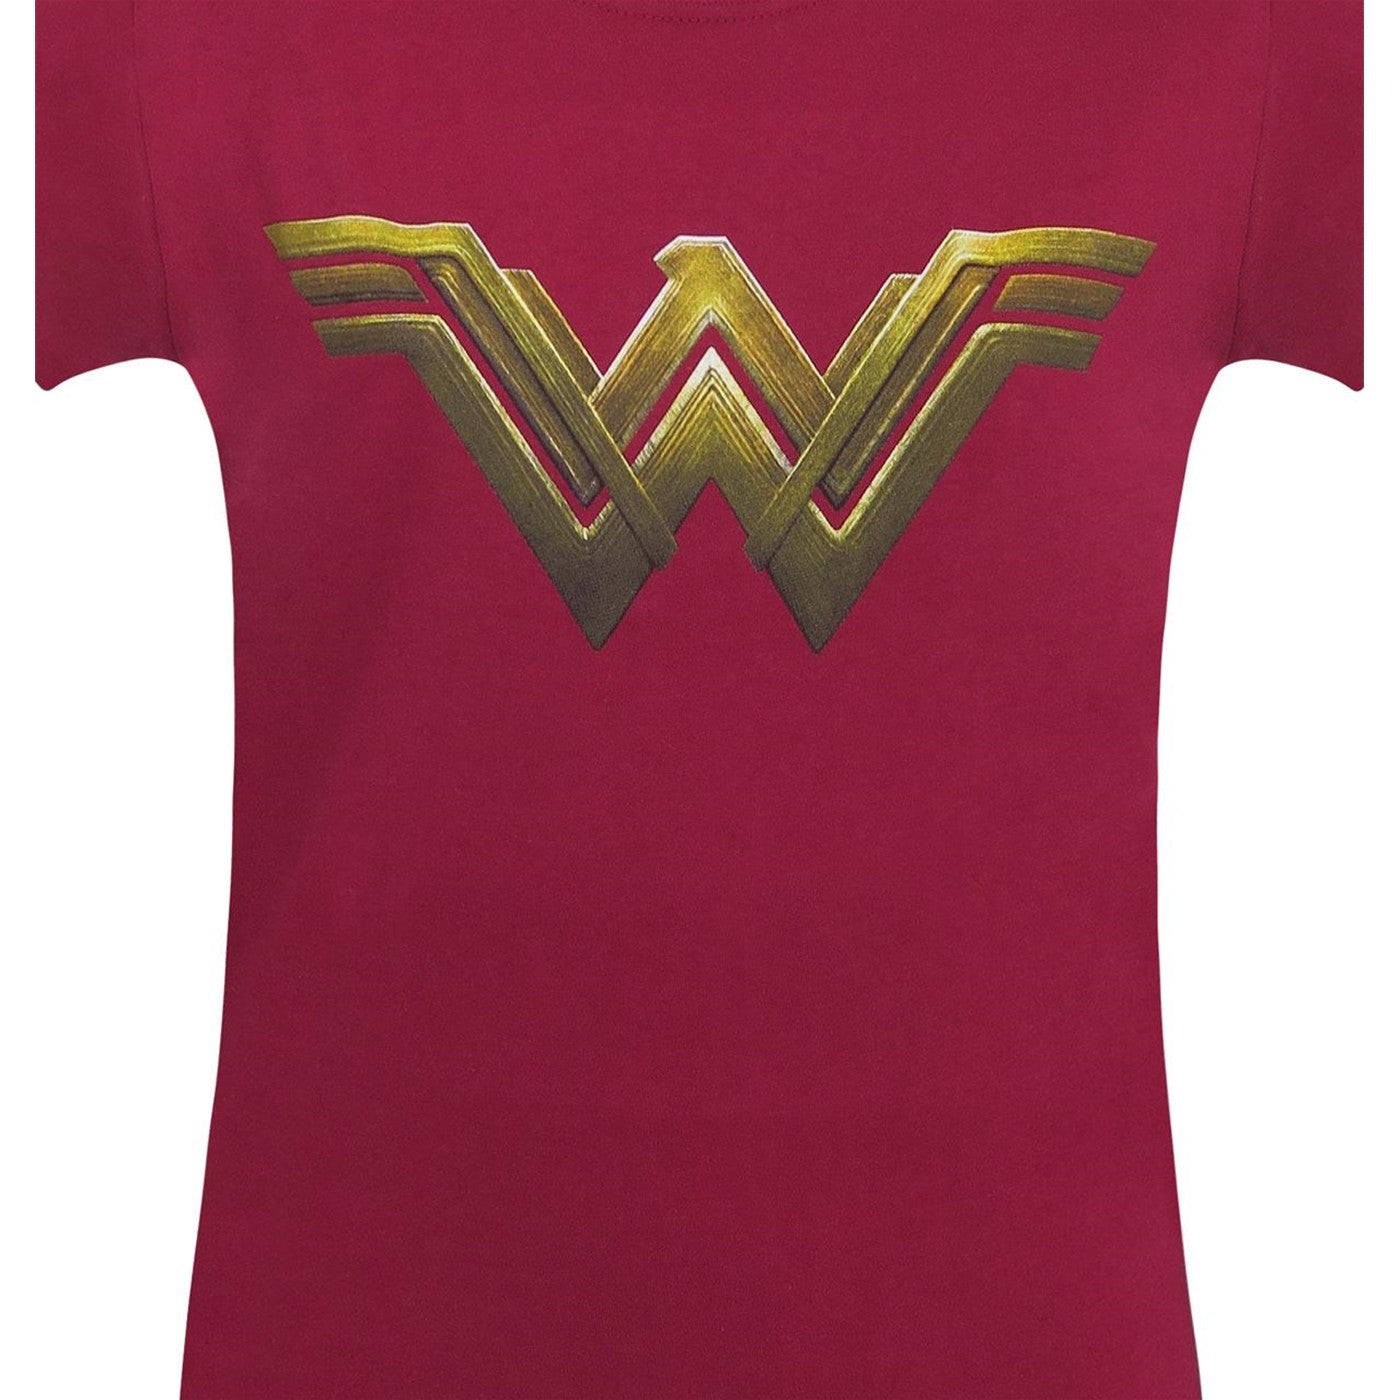 title:Wonder Woman Justice League Logo Women's T-Shirt;color:Red